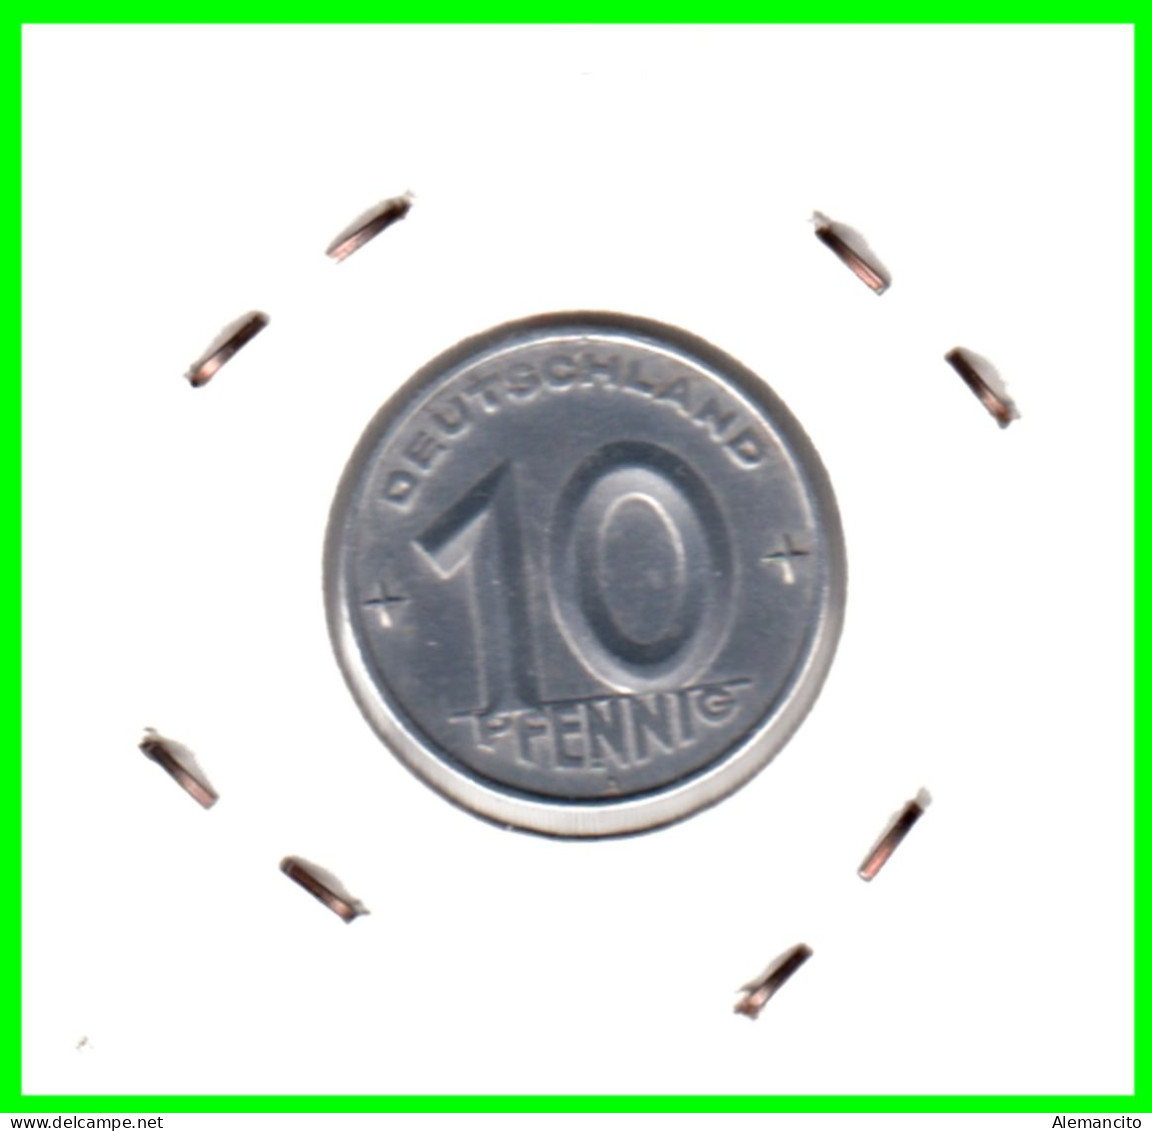 REPUBLICA DEMOCRATICA DE ALEMANIA ( DDR )  MONEDA DE 10 PFENNING AÑO - 1952 - CECA - A - MONEDA DE ALUMINIO CIRCULADA - 10 Pfennig